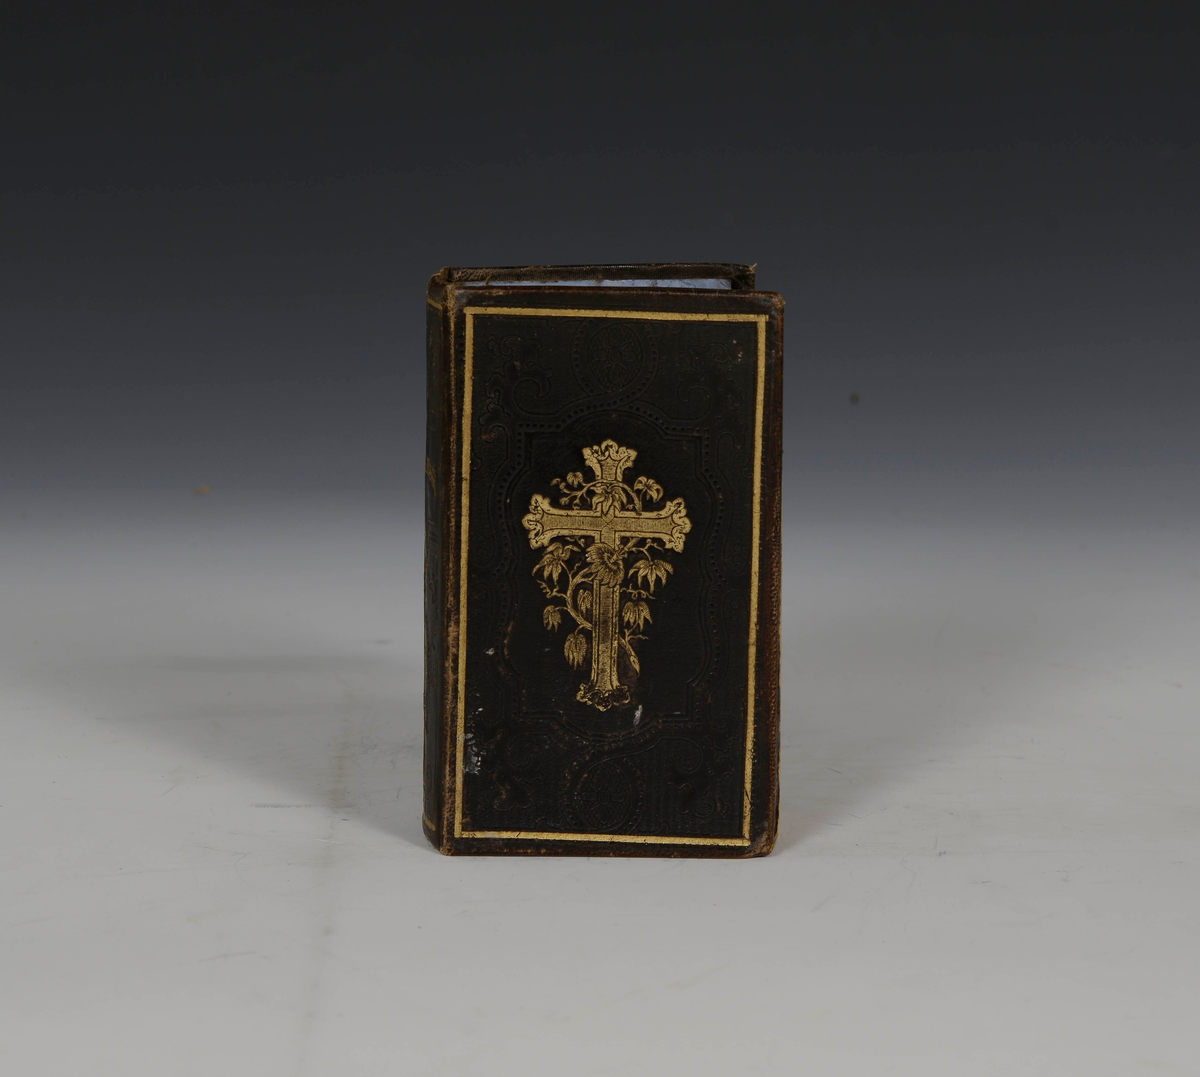 Prot: Evangelisk-christelig Psalmebog... Chr. a. 1861. (+) "Tillæg til den evangelisk-christelige Psalmebog.".... Chr.a 1863. -637 s. + 1 bl. + 2 bl. + 151 s. 32 F. Heilskinnsbd. med gulltrykk.